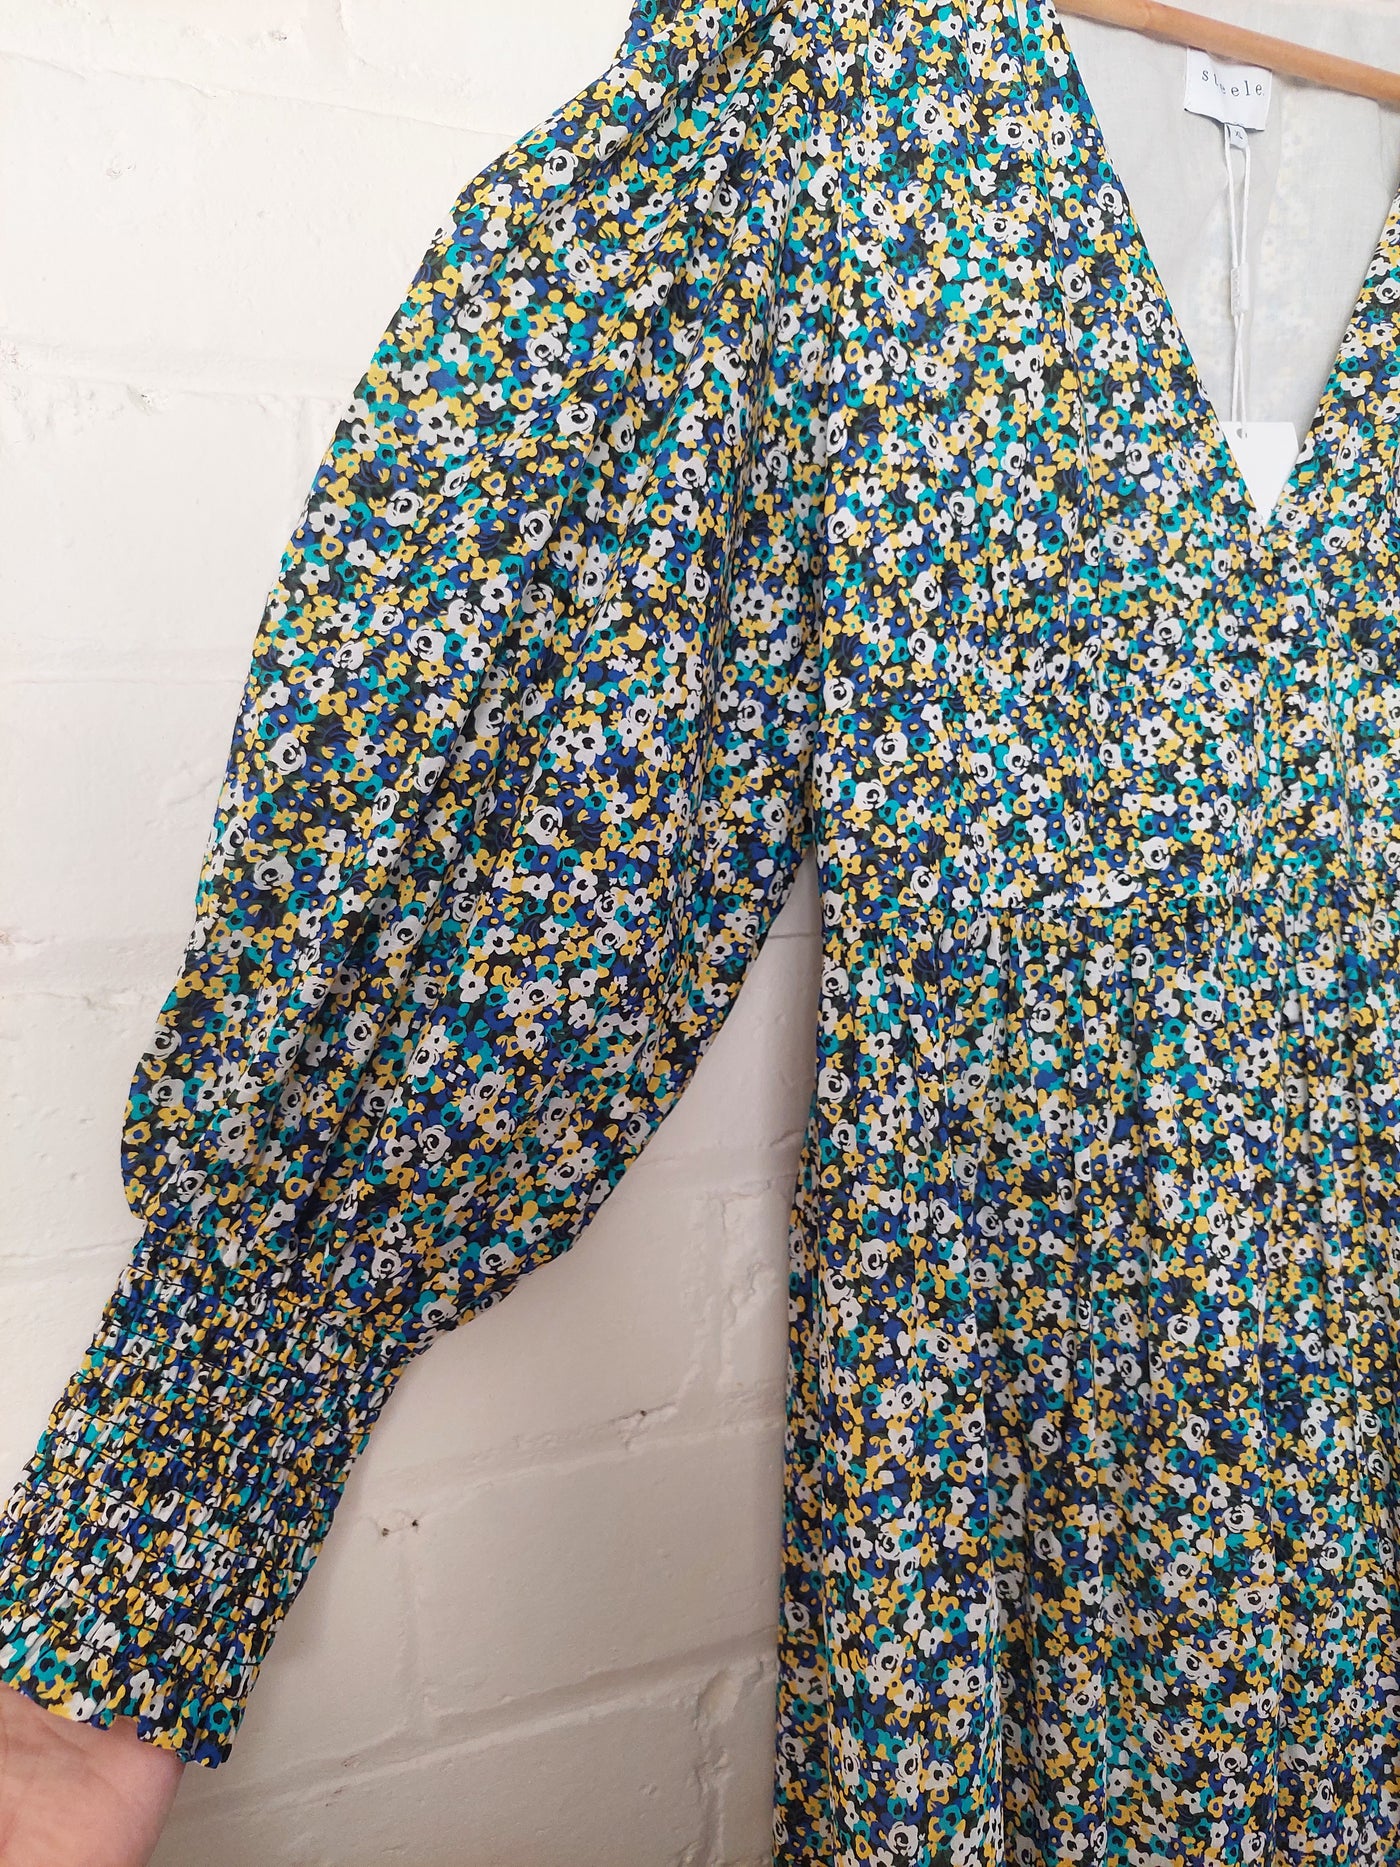 Steele BNWT 'Alaska' Midi Dress in Meadow, Size XL (AU 14)